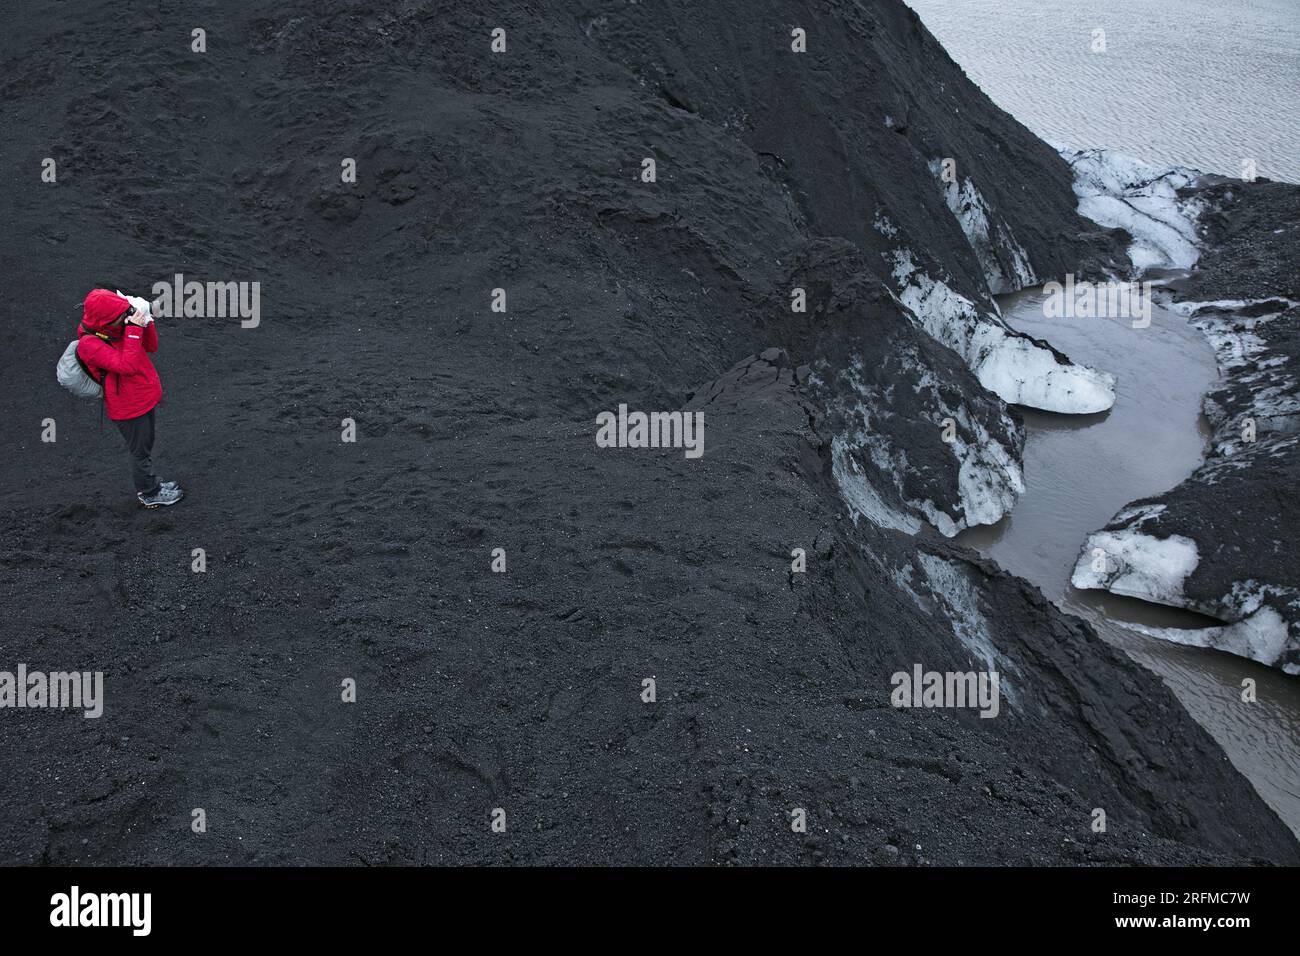 Islande, Sólheimajökull, le Glacier couvert de cendre vulcanique avec 1 personnage,langue Glaciaire du Mýrdalsjökull / Iceland, Sólheimajökull, der vulkanische, mit Asche bedeckte Gletscher mit 1 Figur, Mýrdalsjökull Eiszunge / Stockfoto